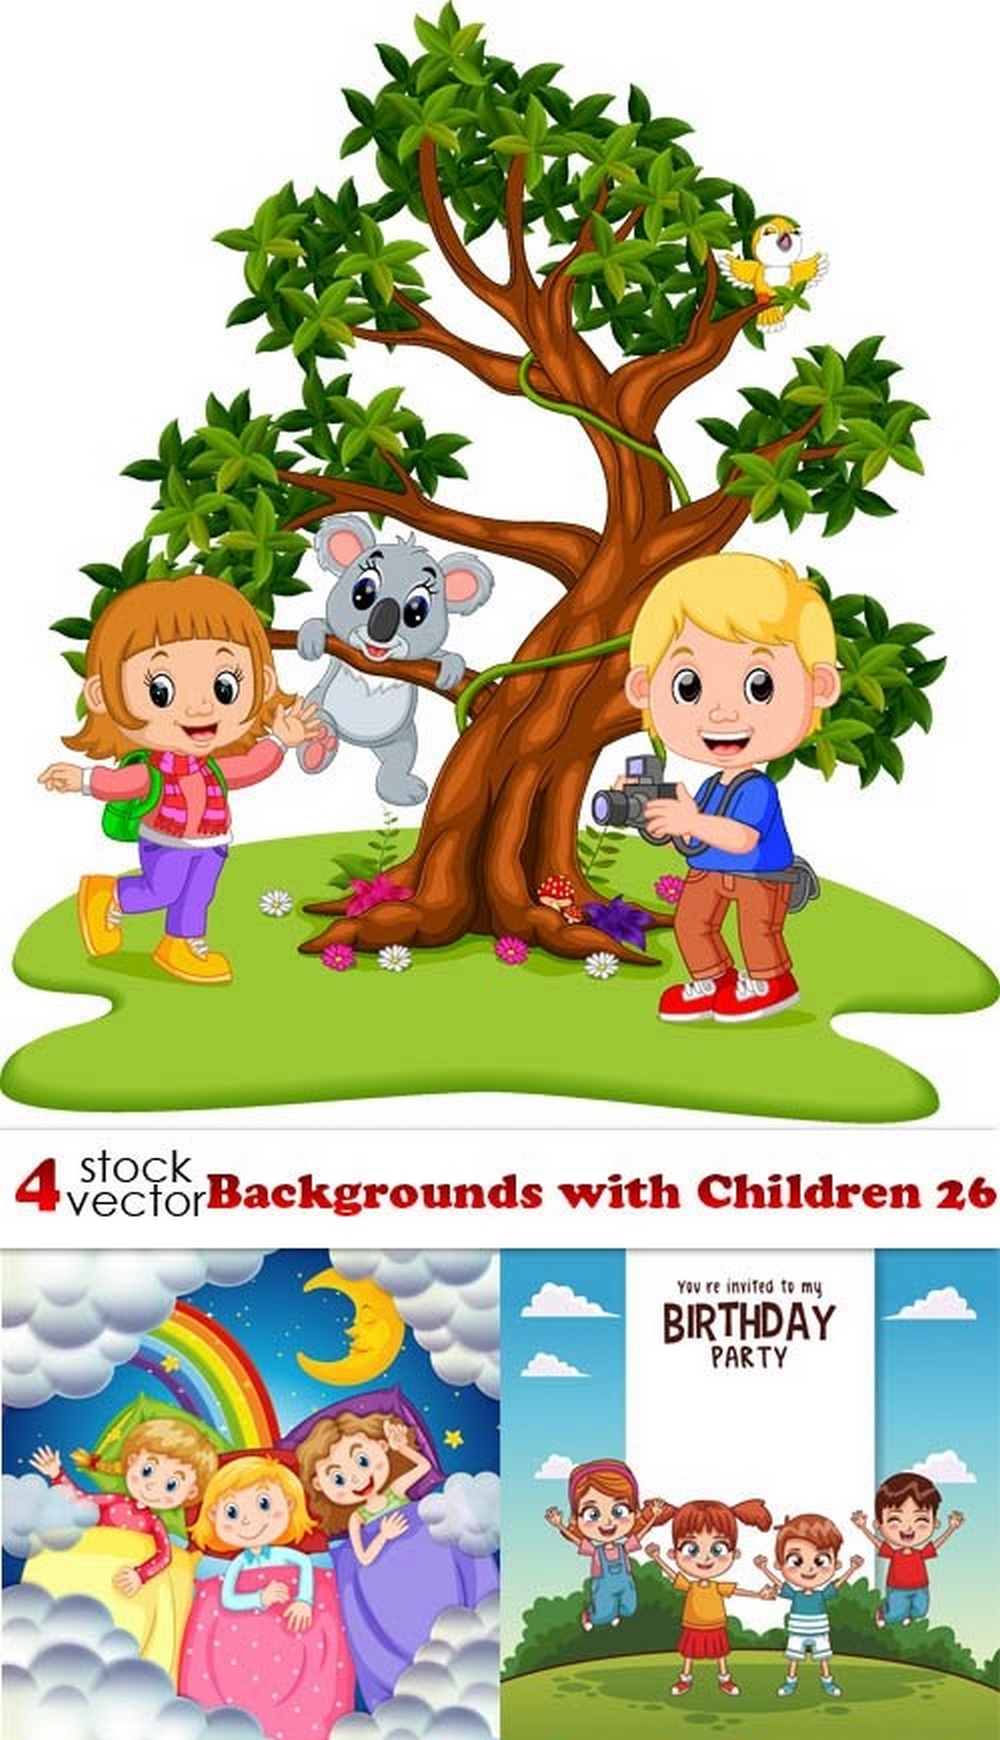 Vectors - Backgrounds with Children 26